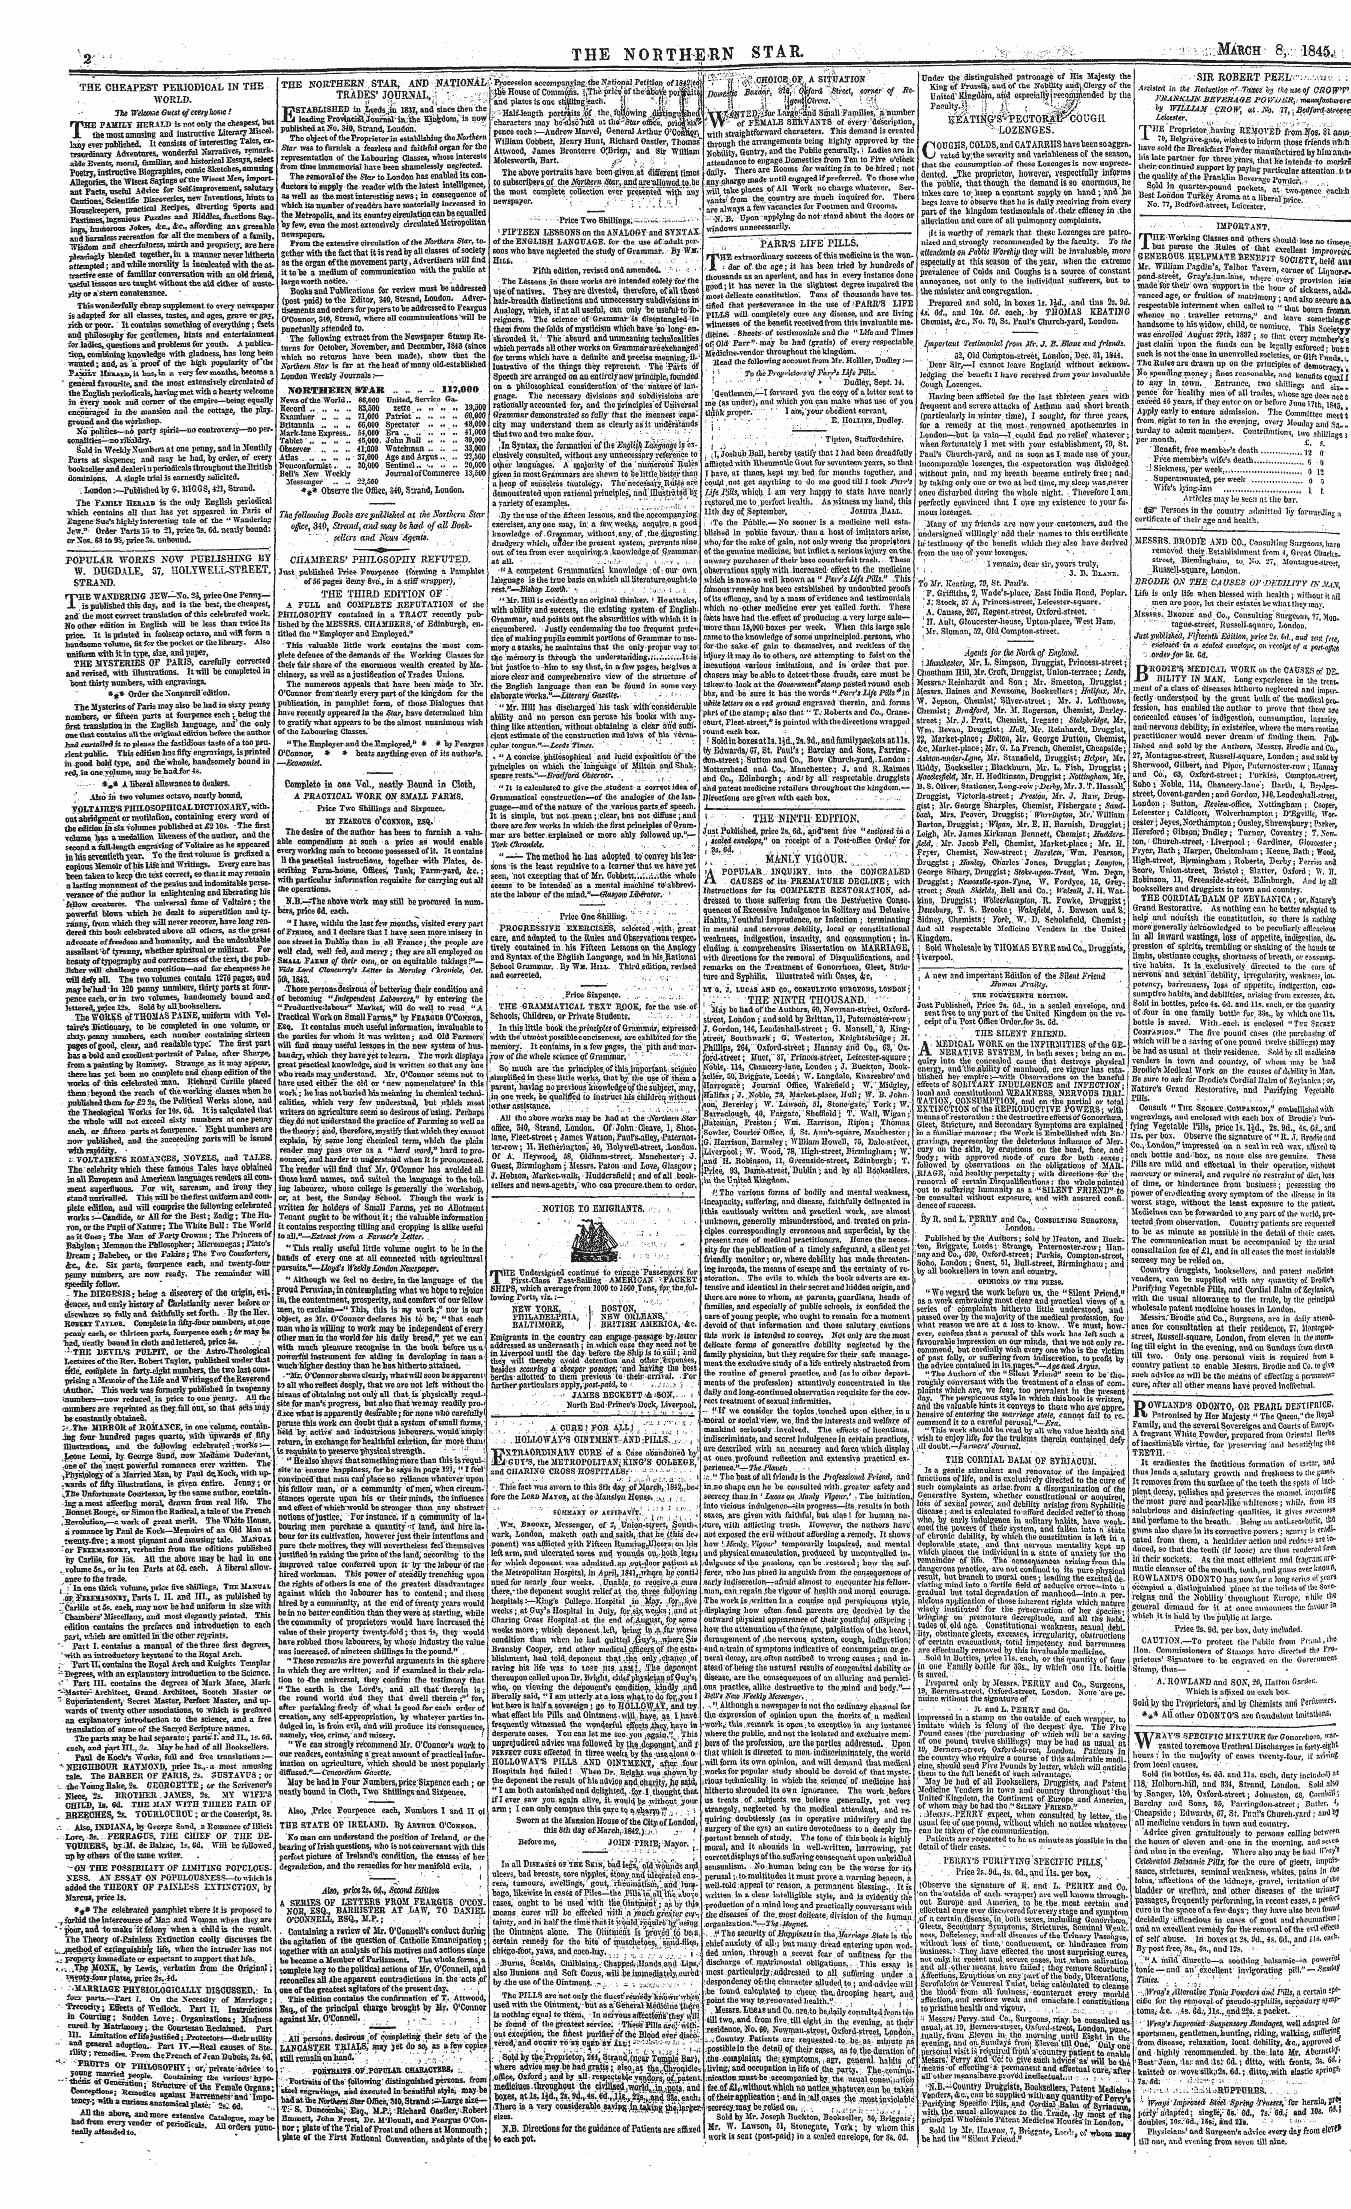 Northern Star (1837-1852): jS F Y, 3rd edition - Y .: ^ The Northern Star. V;:Ma^Ch 8,.18...